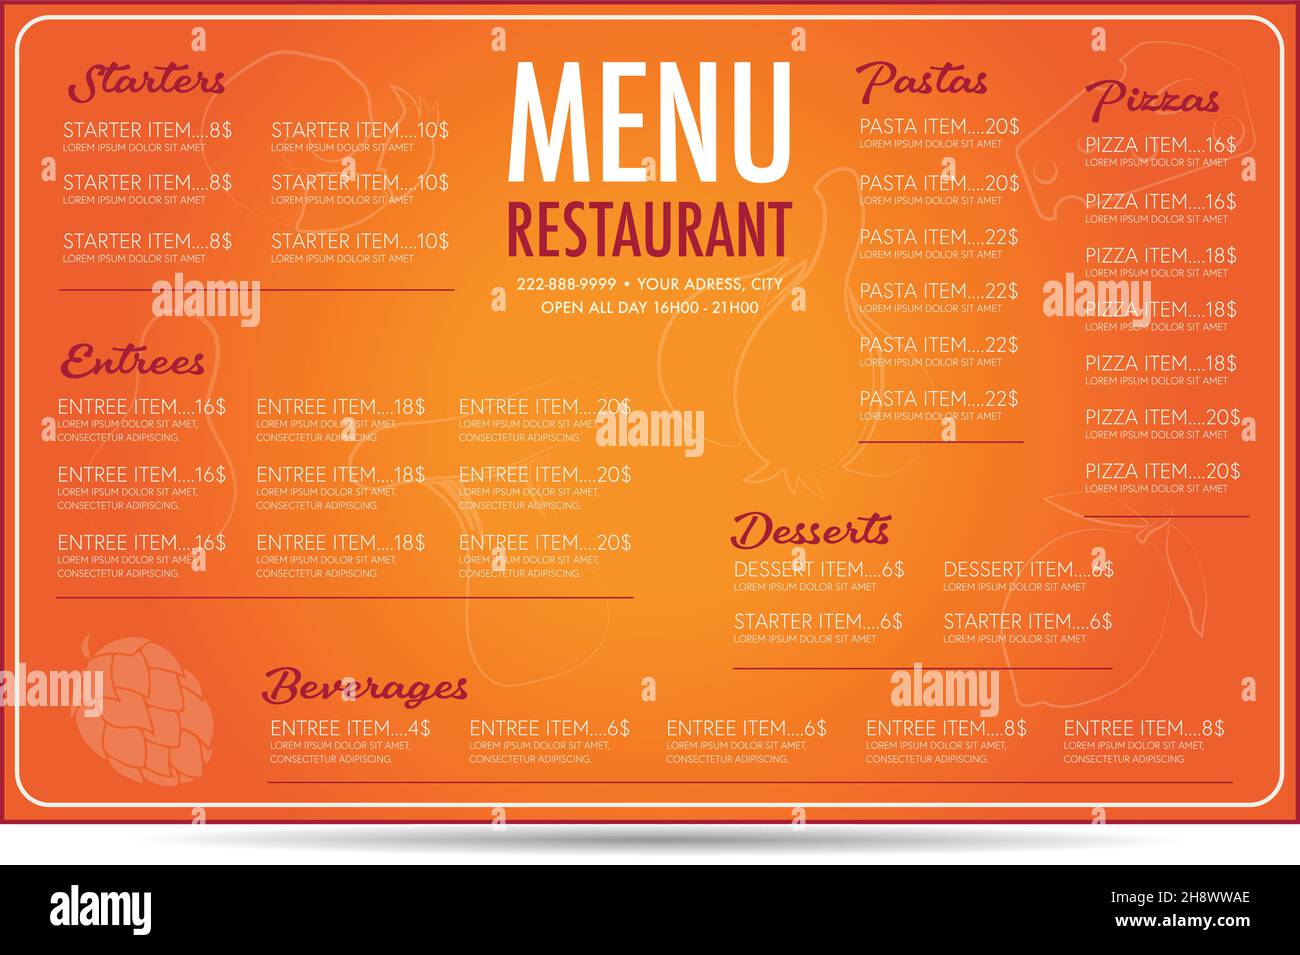 Restaurant Menü Flyer Vorlage Layout Design orange Hintergrund Schriftarten sind europa light und armonia Skript Stock Vektor